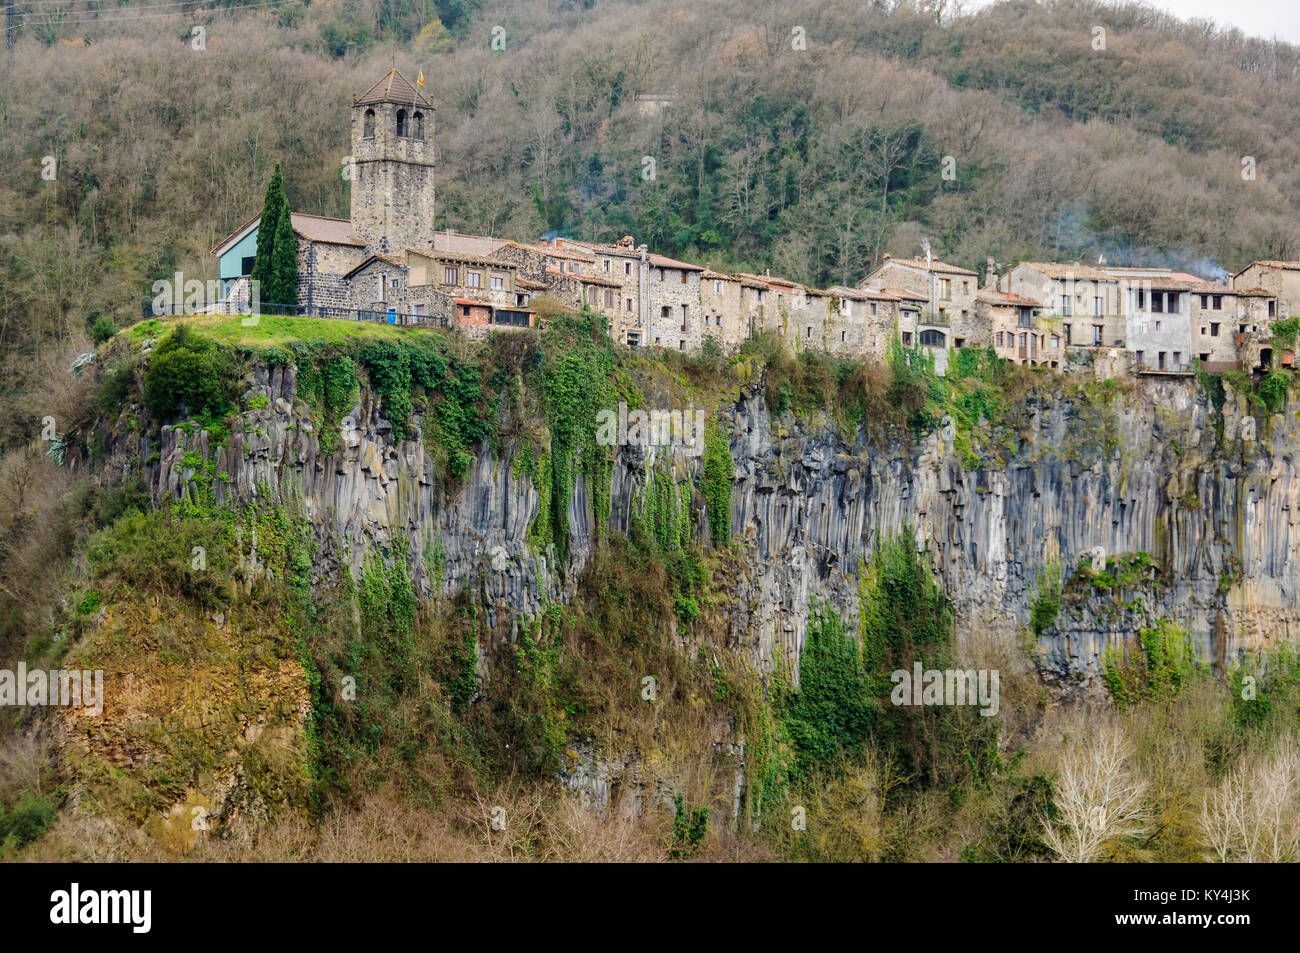 Castellfollit de la Roca, un village Catalan médiéval sur un rocher, Espagne Banque D'Images